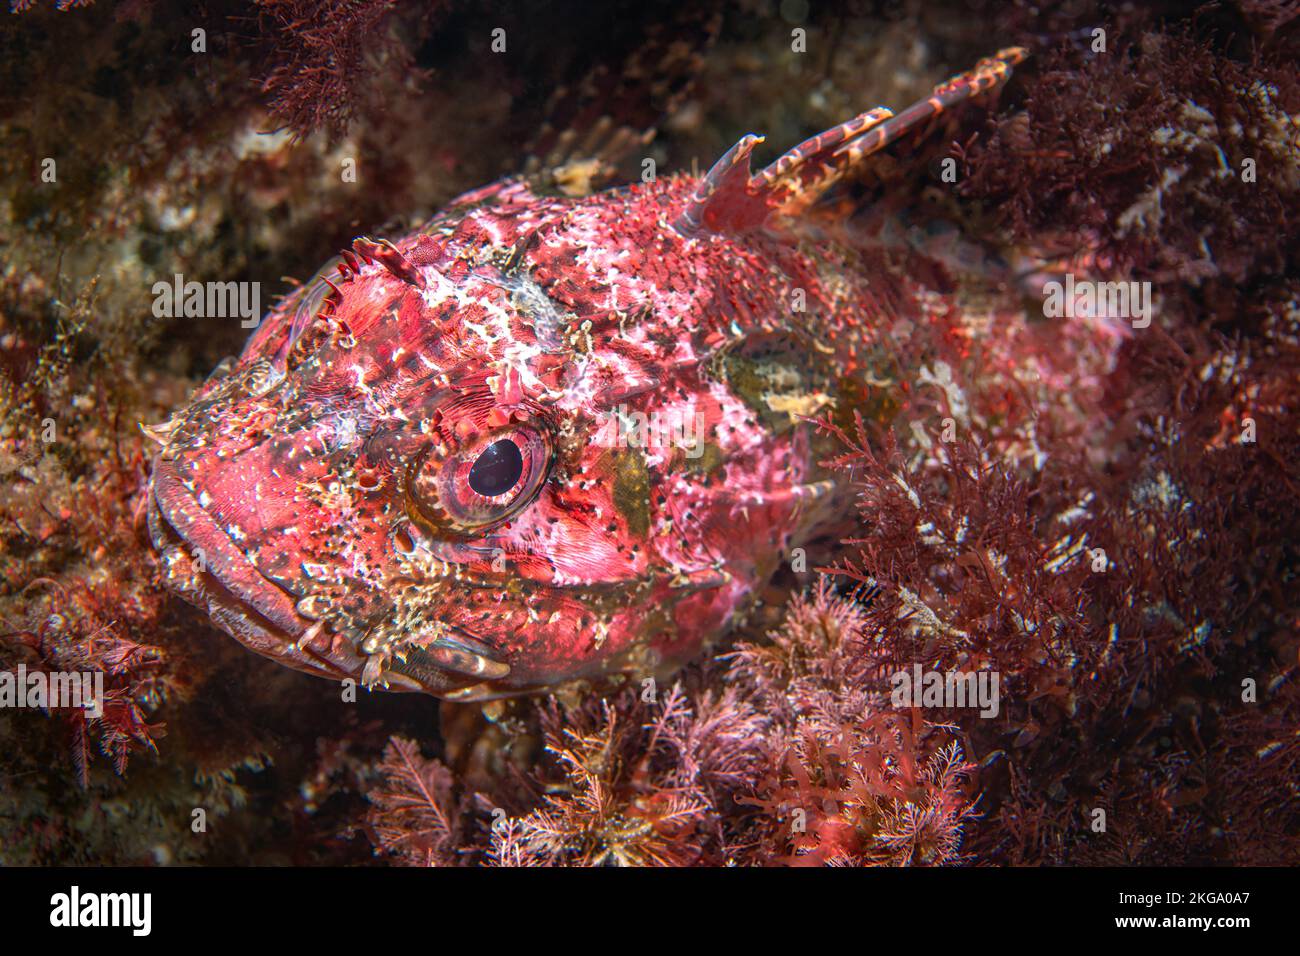 Un pez escorpión rojo se esconde en un arrecife en las Islas del Canal de California y se mezcla con las algas rojas para evitar ser comido. Foto de stock